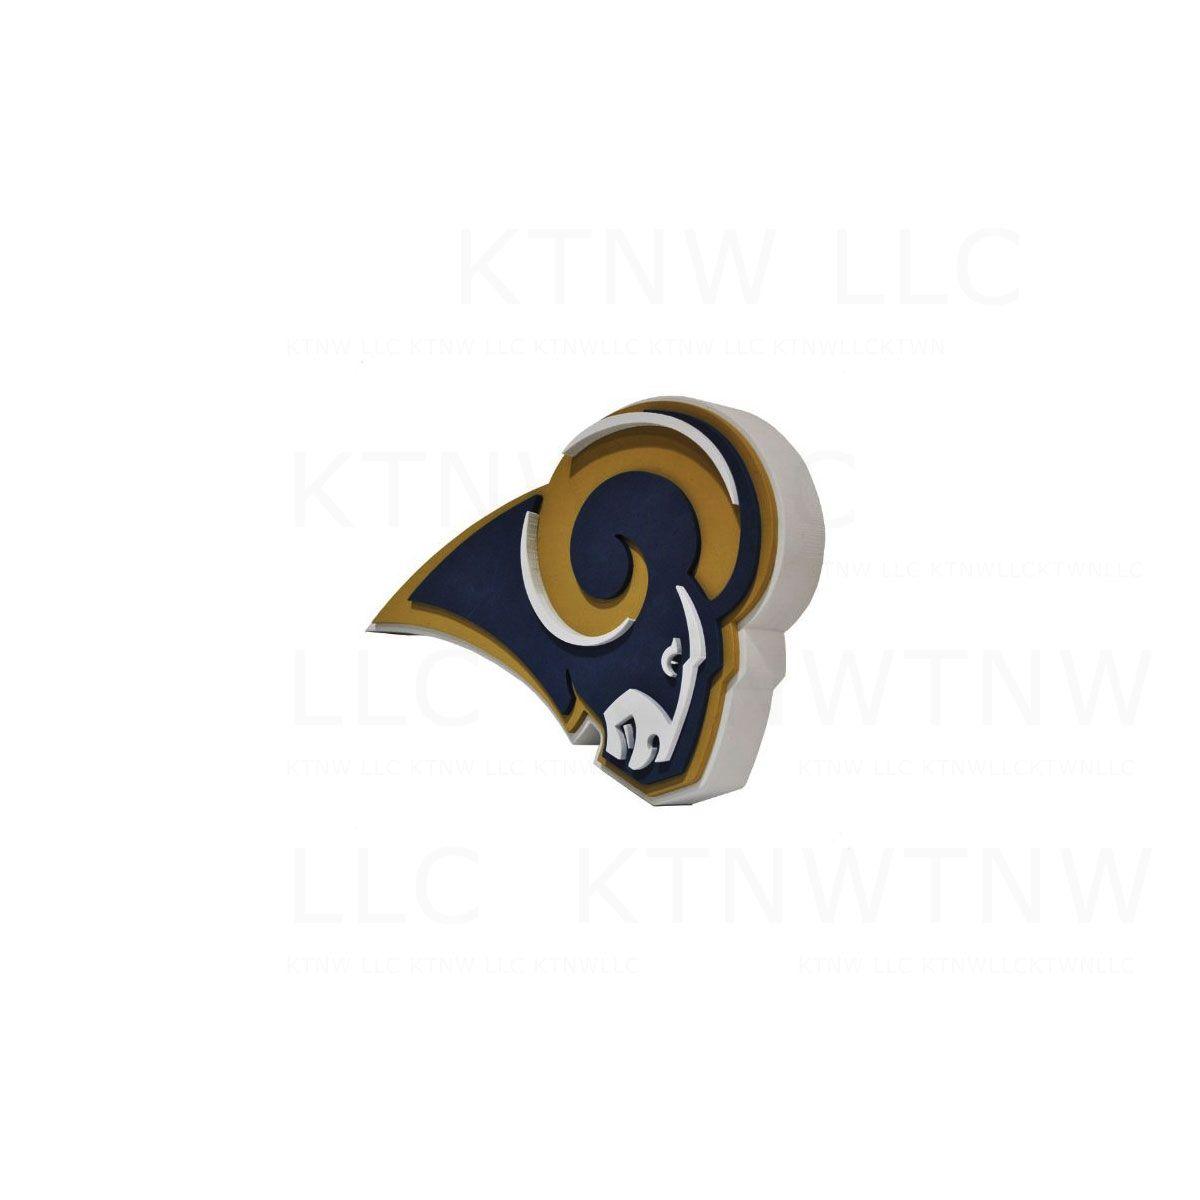 eBay Items with Logo - Brand New NFL St. Louis Rams 3D Fan Foam Logo Wall Sign | eBay